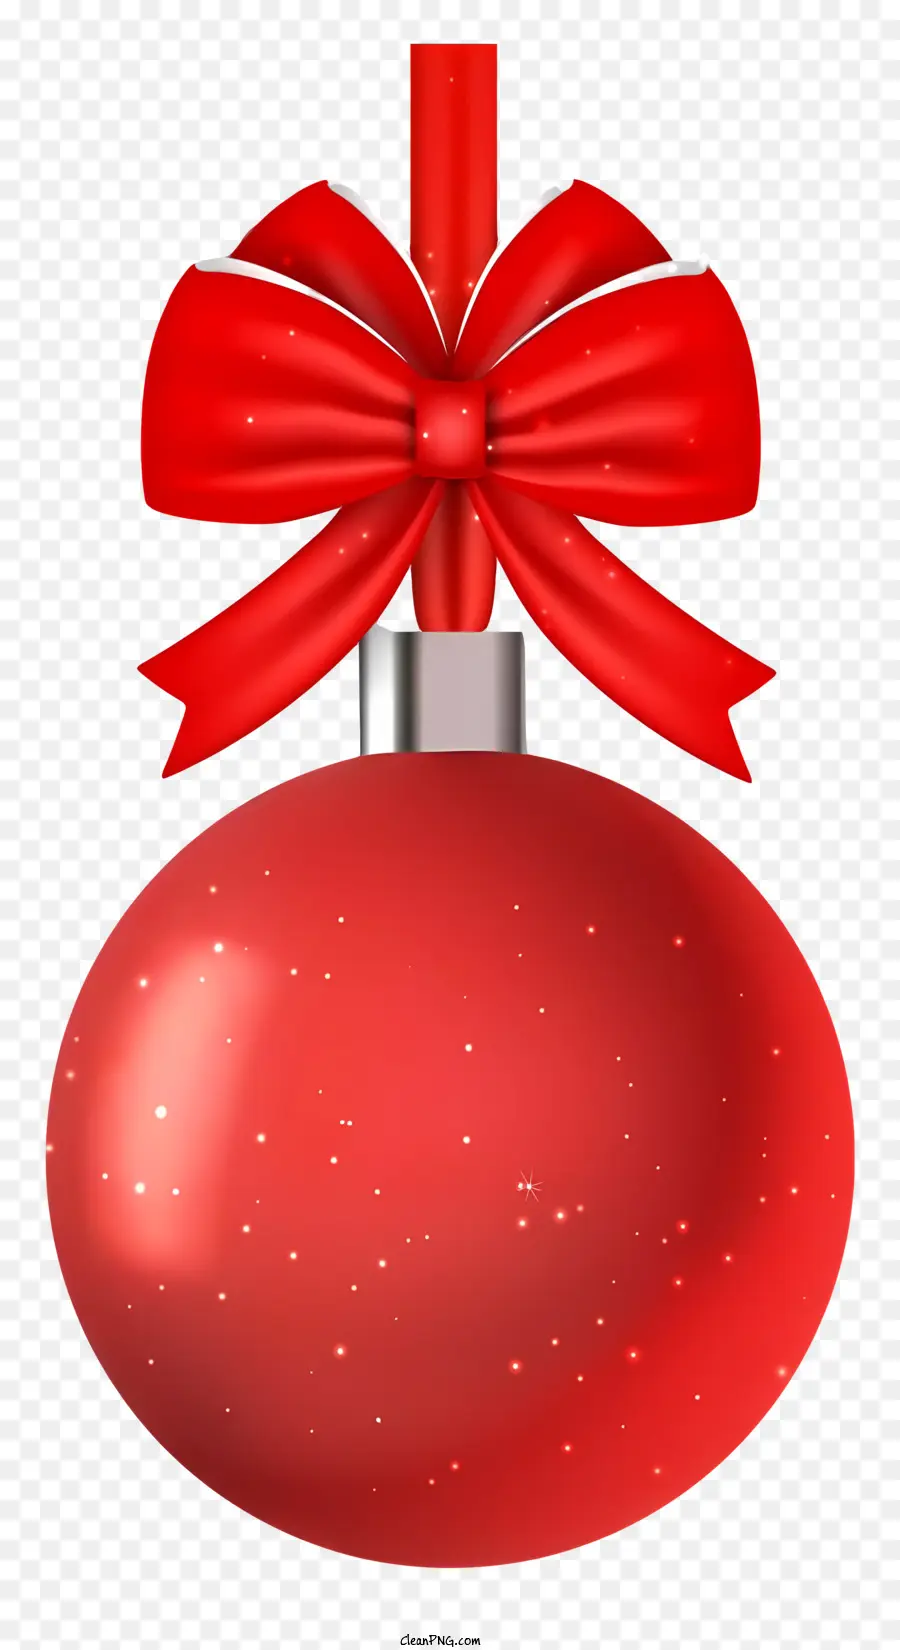 Rotes Weihnachts ornament - Rote Weihnachtskugel mit Band hängt an schwarzem Hintergrund